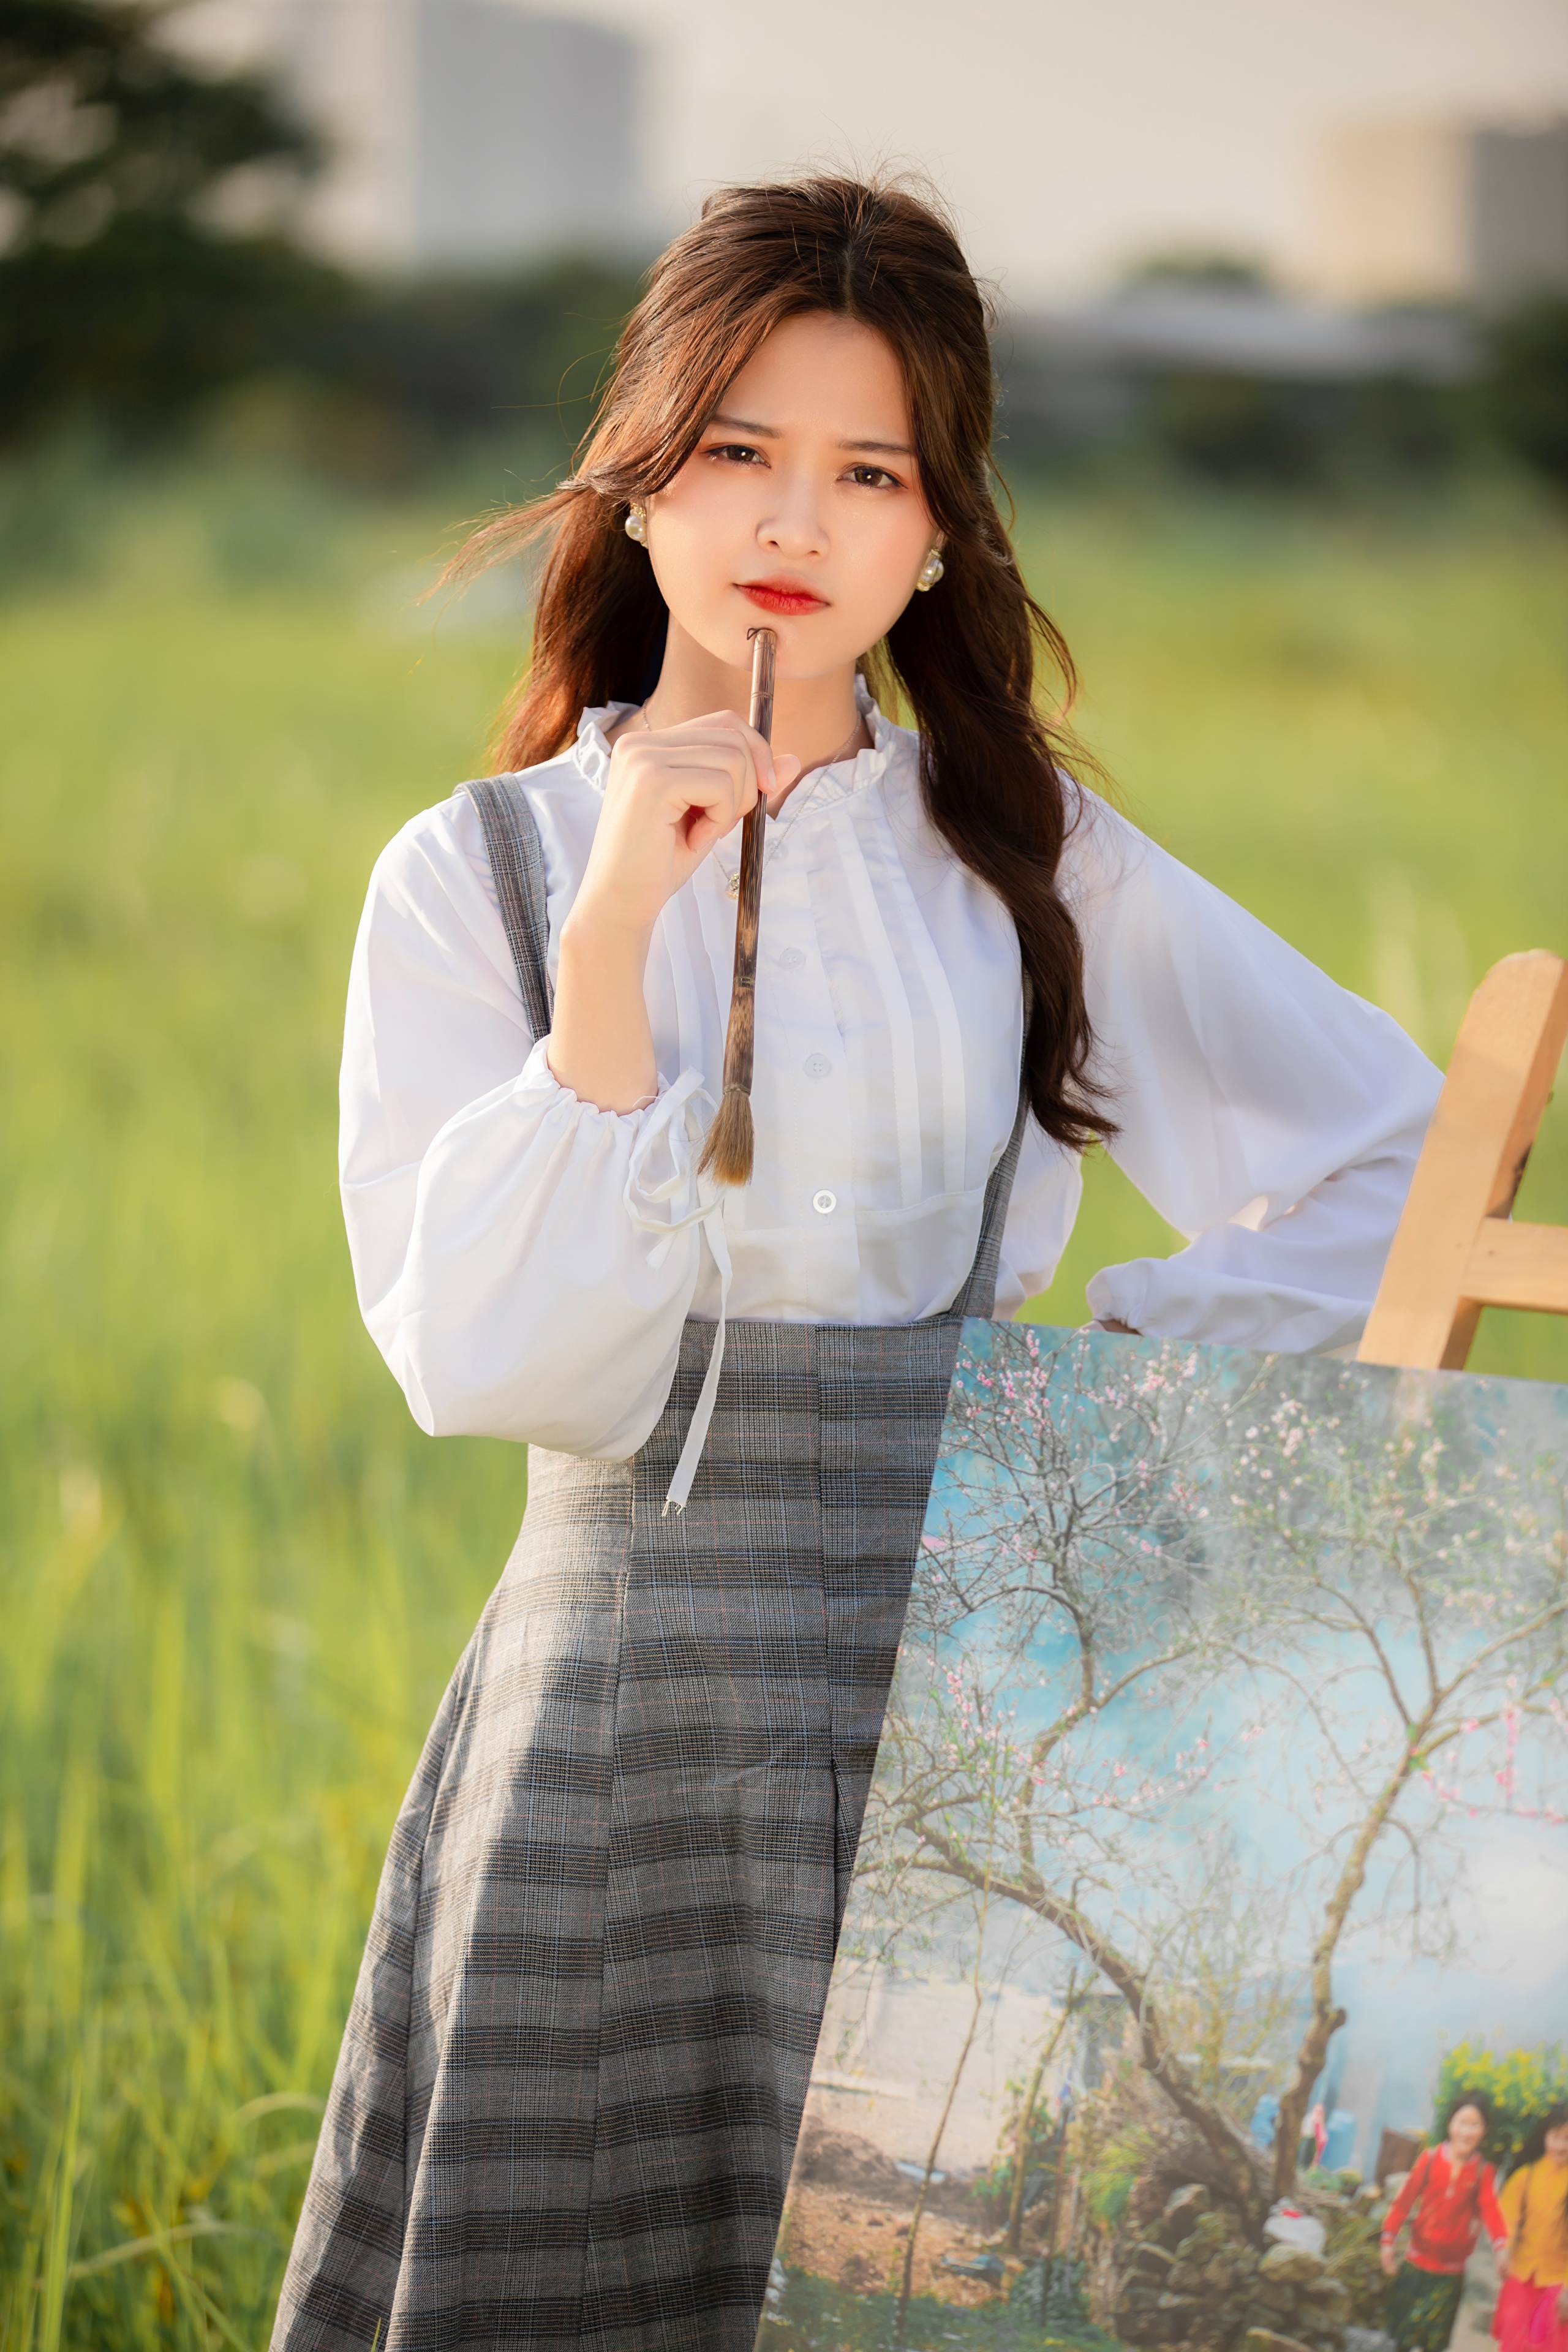 Asian Model Women Long Hair Dark Hair Depth Of Field White Blouse Skirt Grass Field Painting Brush 2560x3840